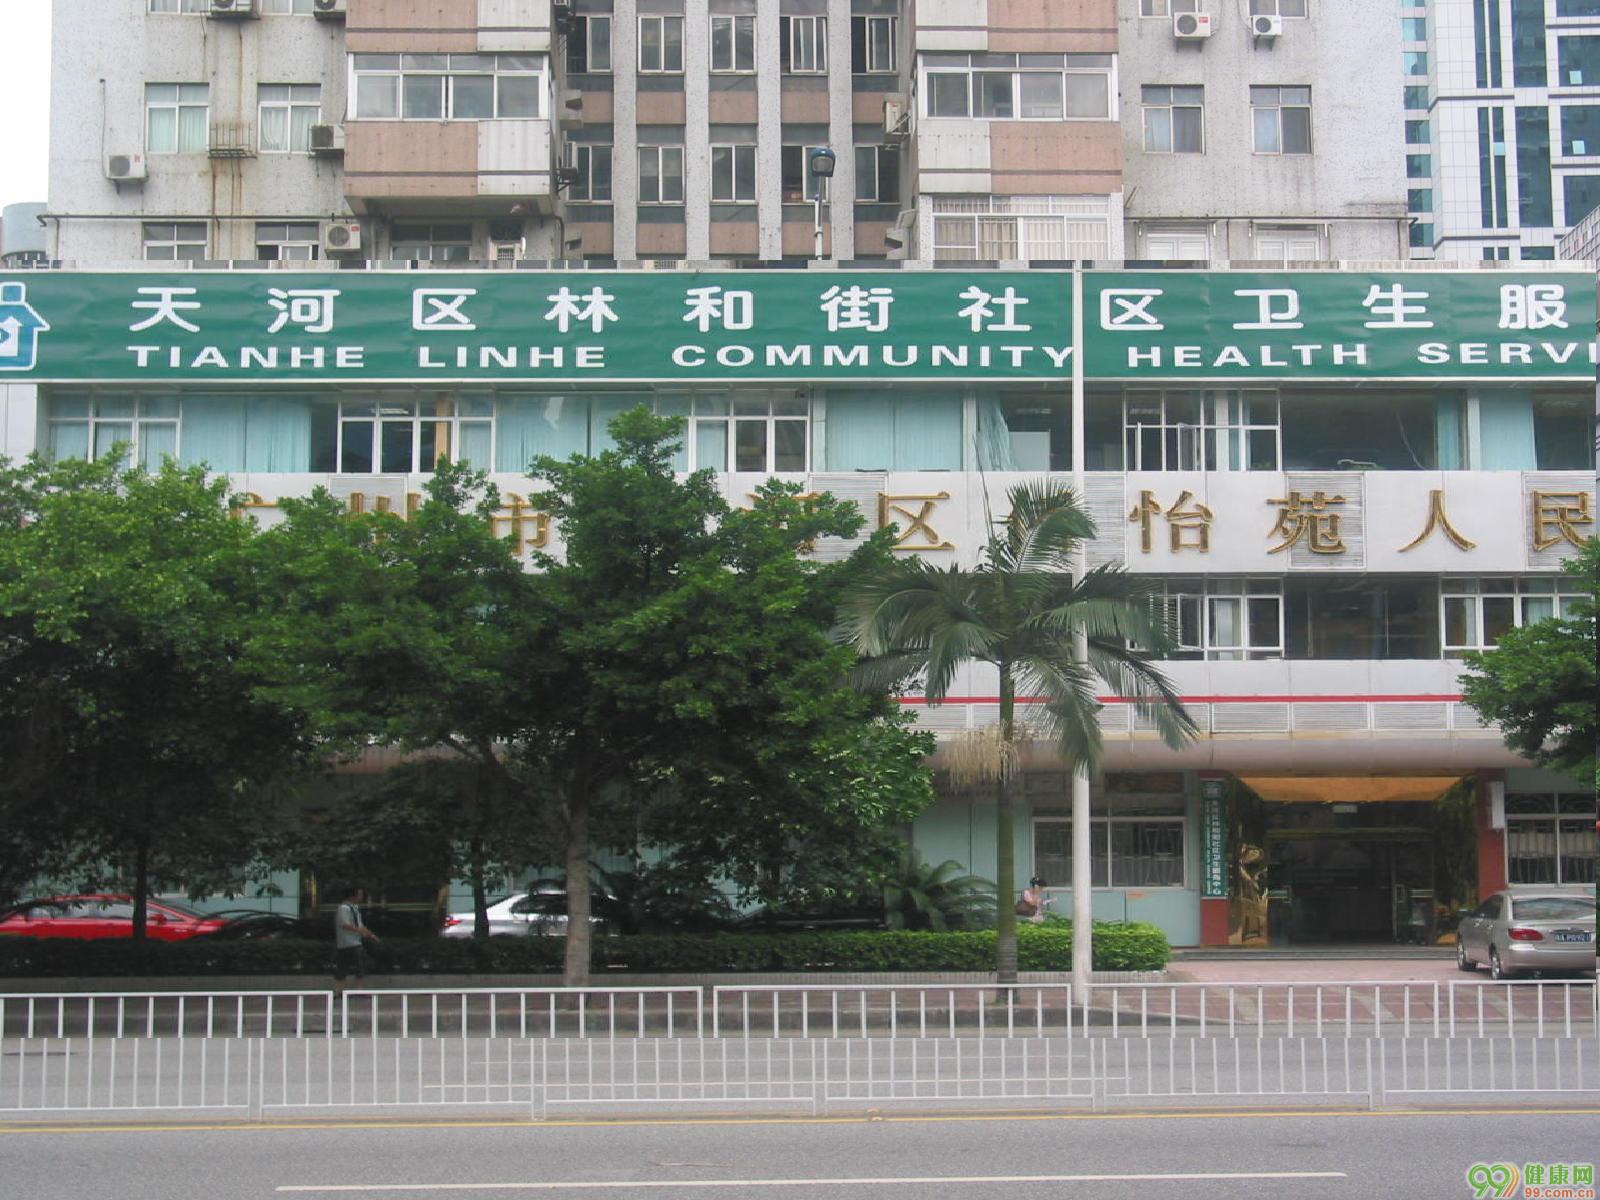 广州市天河区林和街社区卫生服务中心